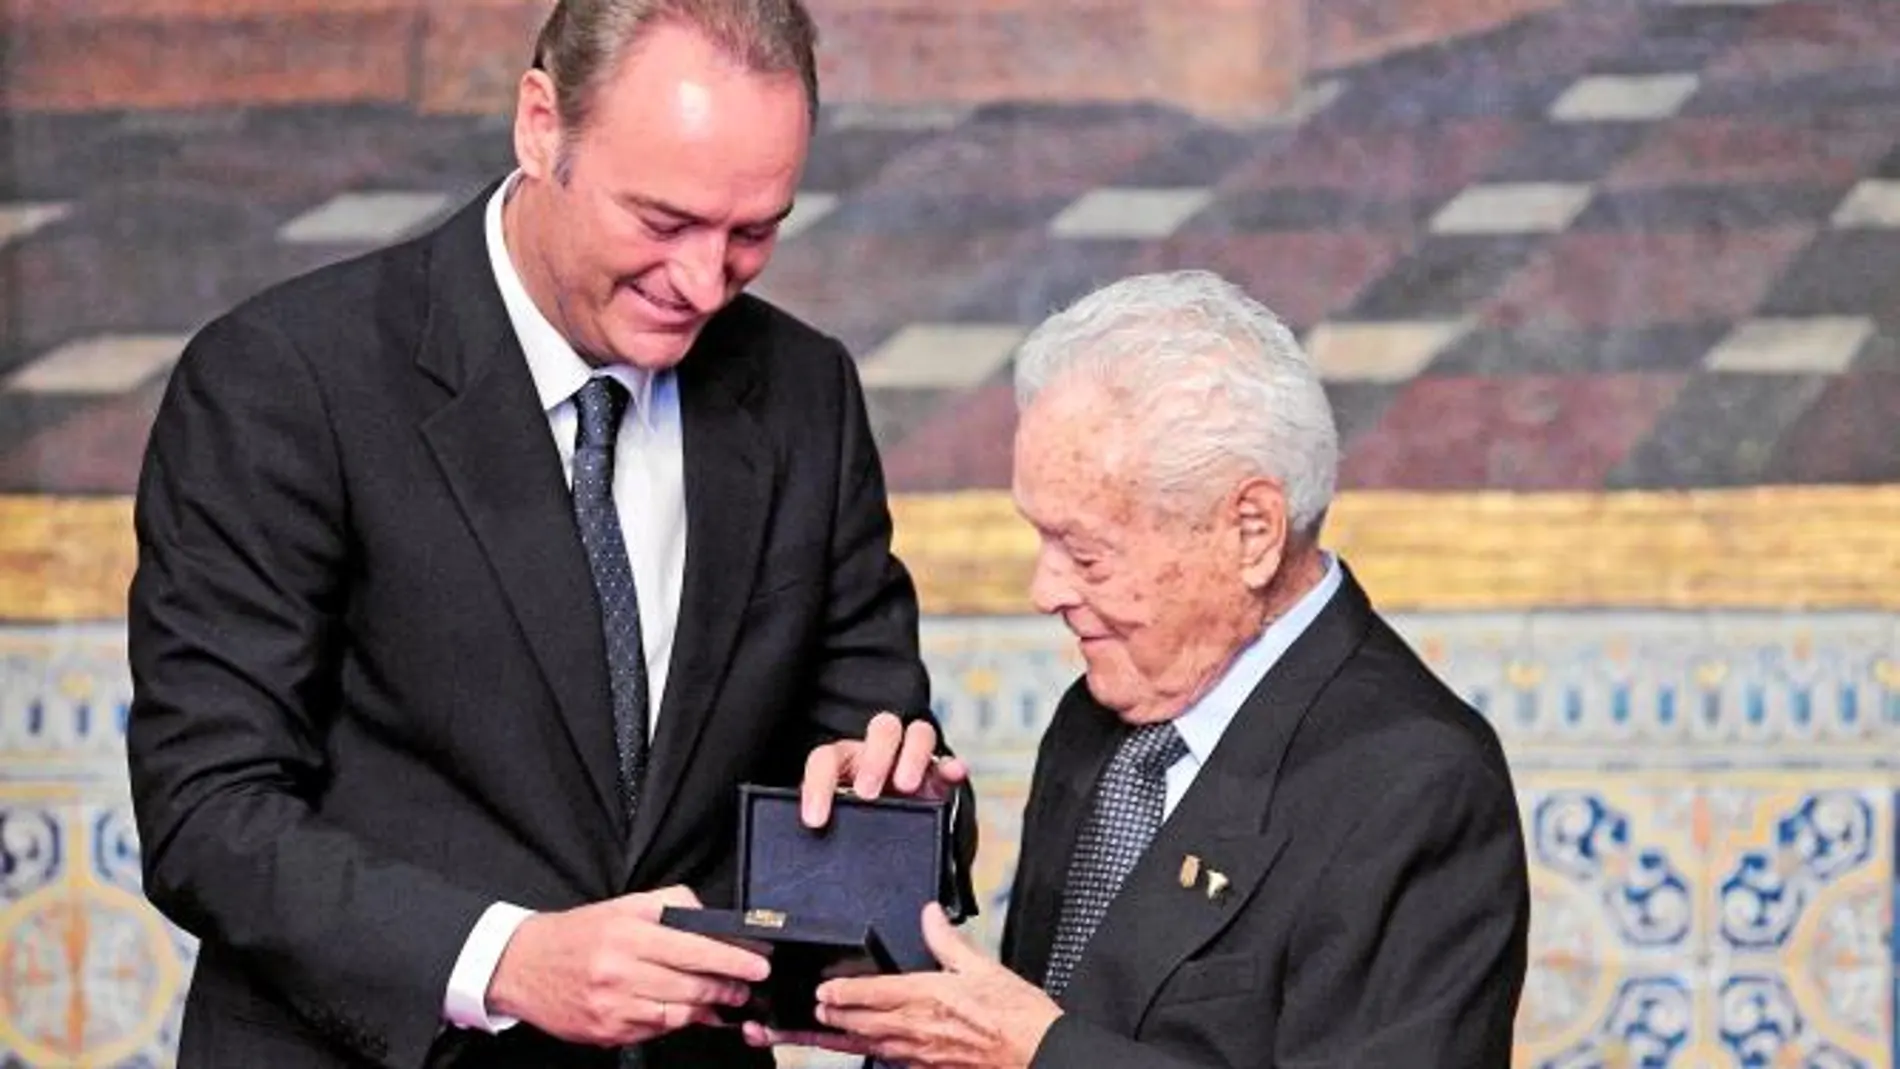 El presidente Fabra entrega a Francisco Cano la Distinción al Mérito Cultura el pasado 9 d' Octubre